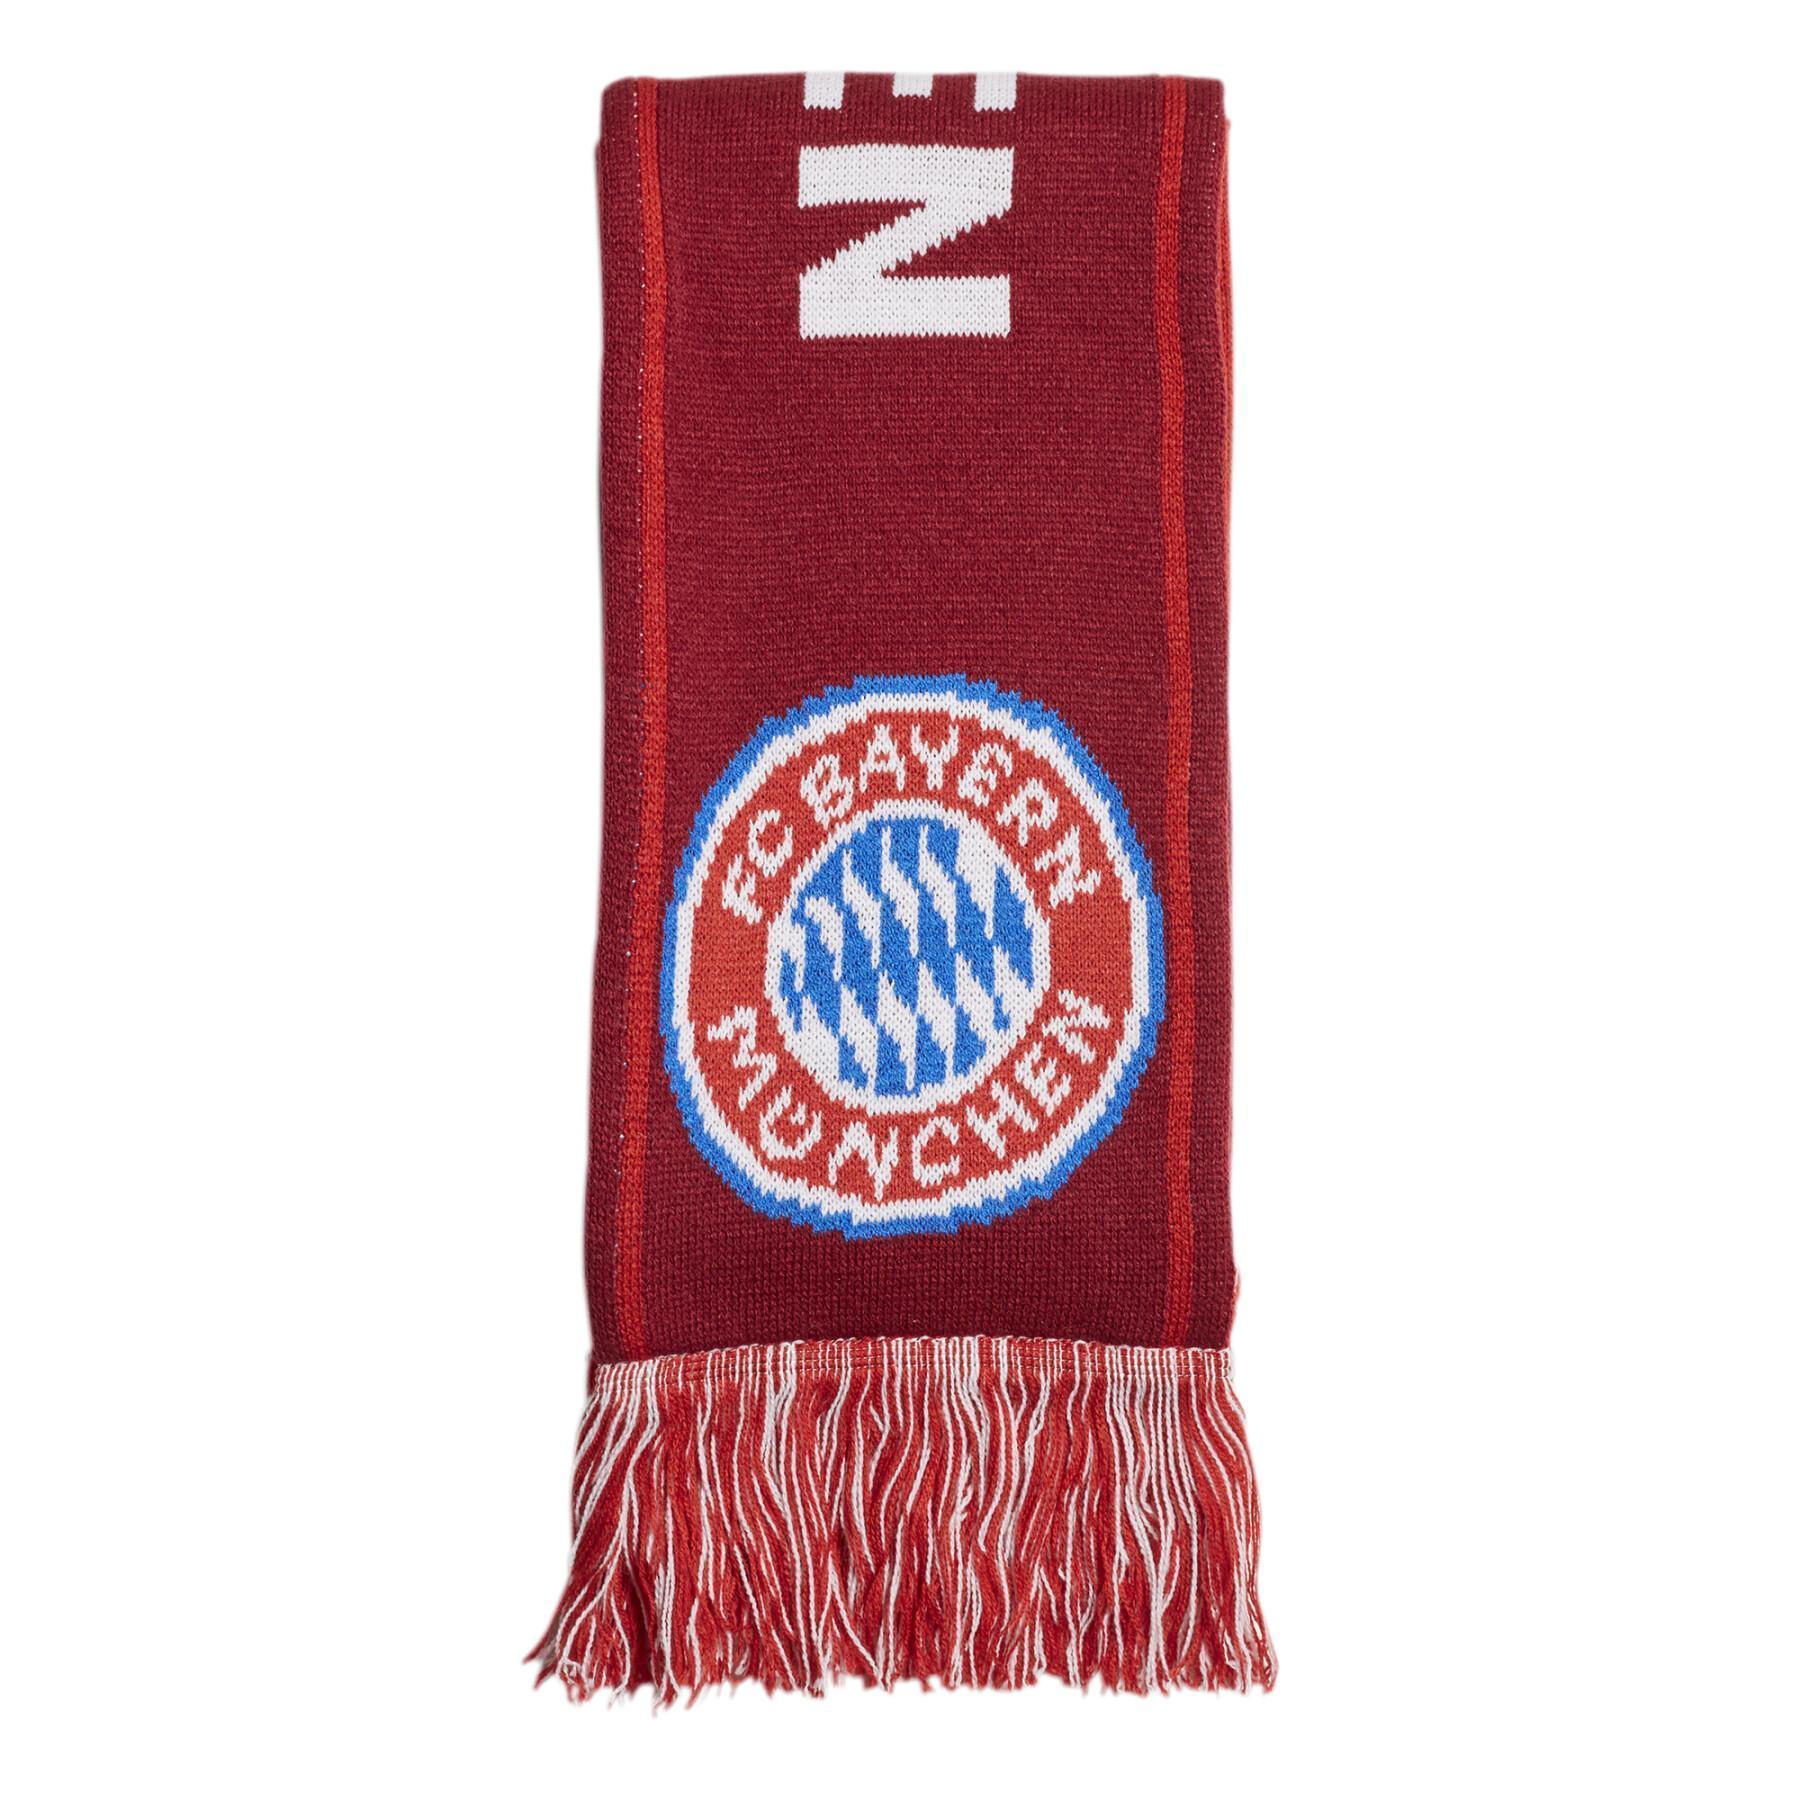 fc scarf Bayern Munich